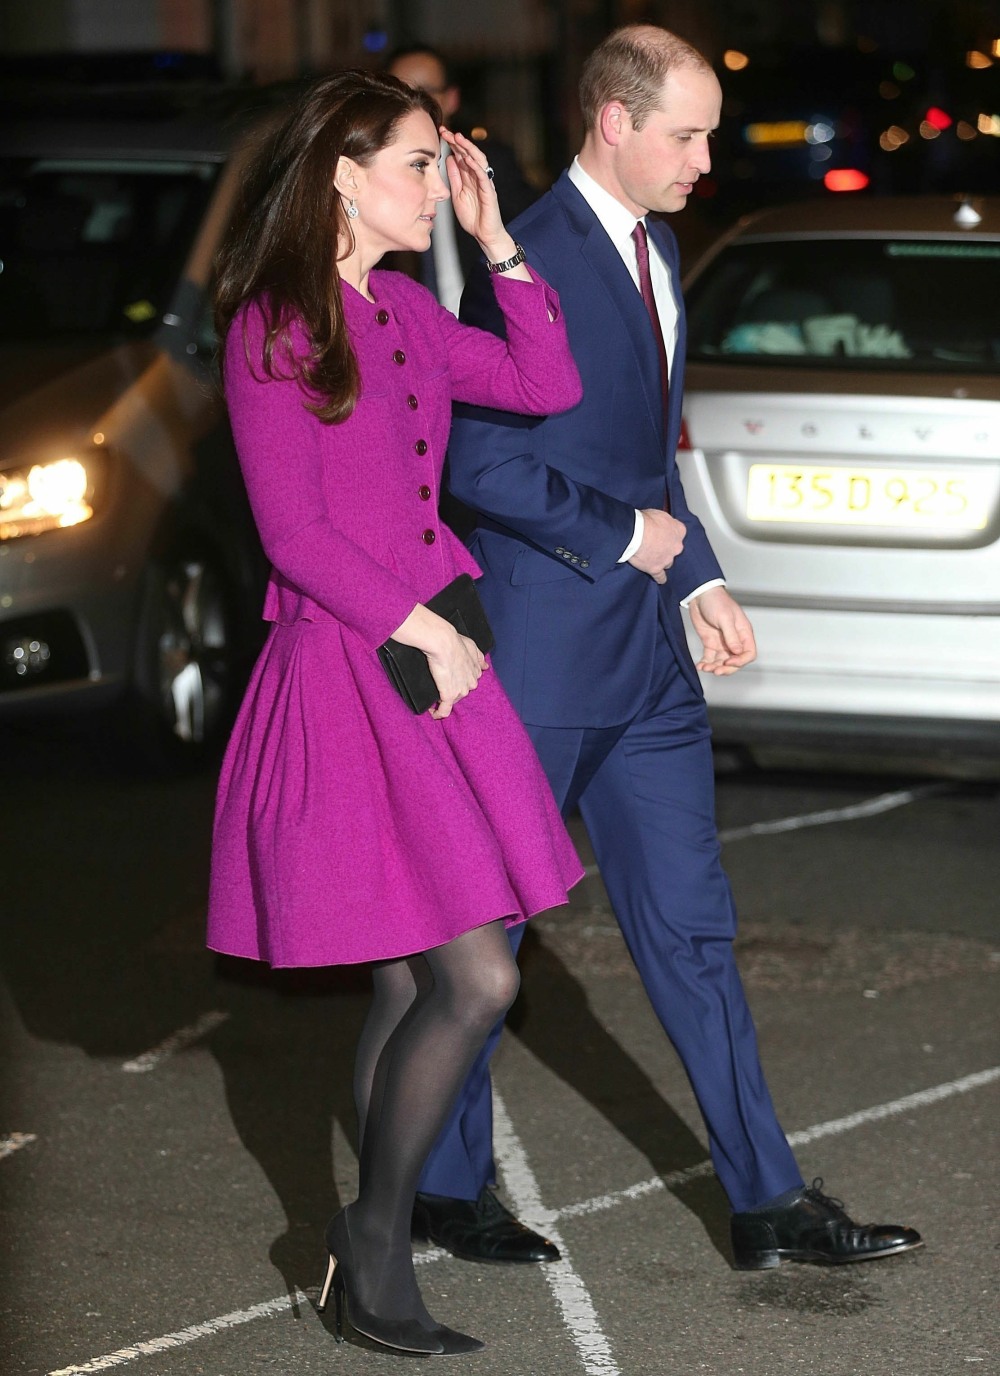 Герцогиня Кейт в «Оскар де ла Рента» в Лондоне: щекотка или прелесть?